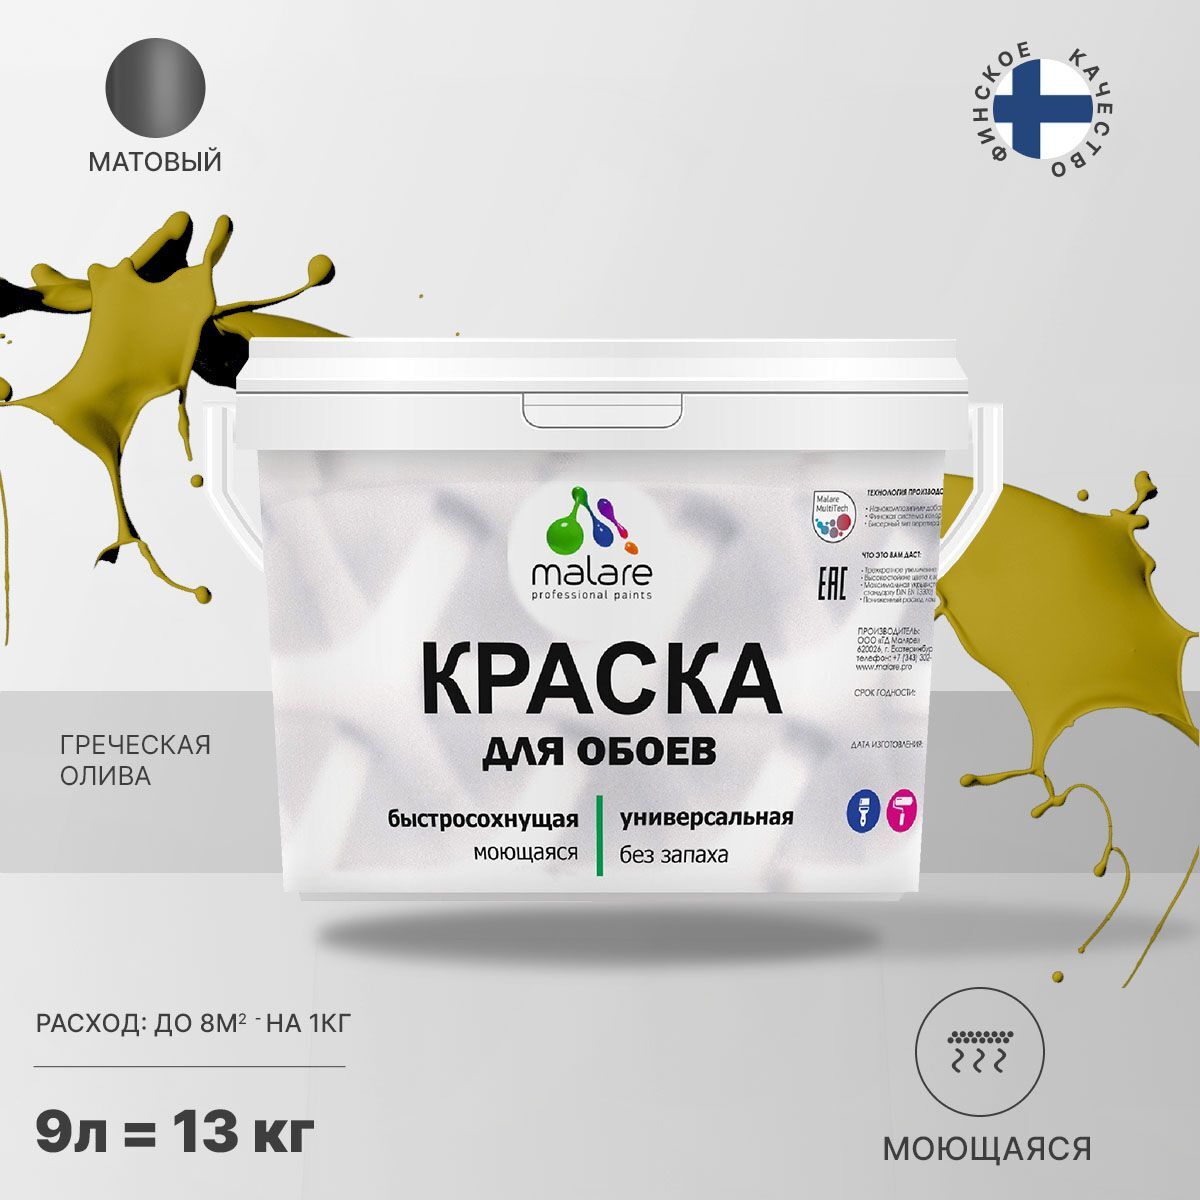 Краска Malare Professional специализированная Акриловая, 13 кг греческая олива